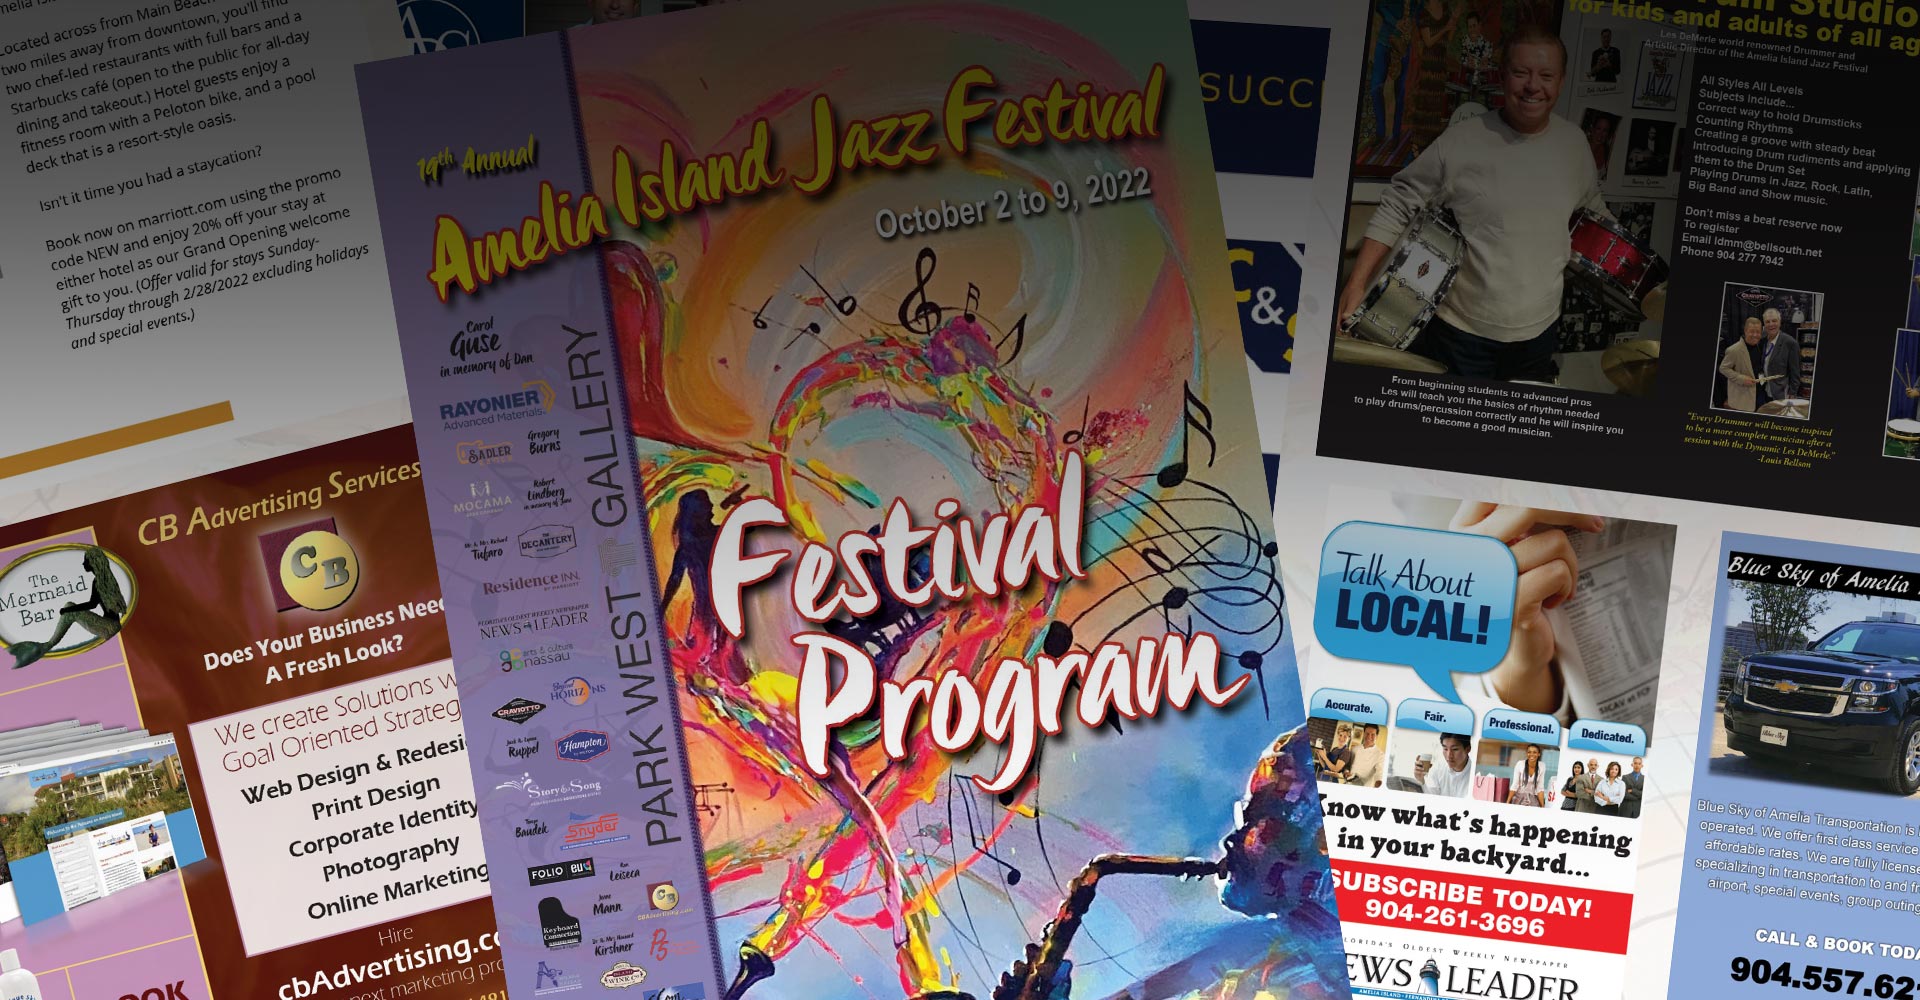 2022 Amelia Island Jazz Festival Program